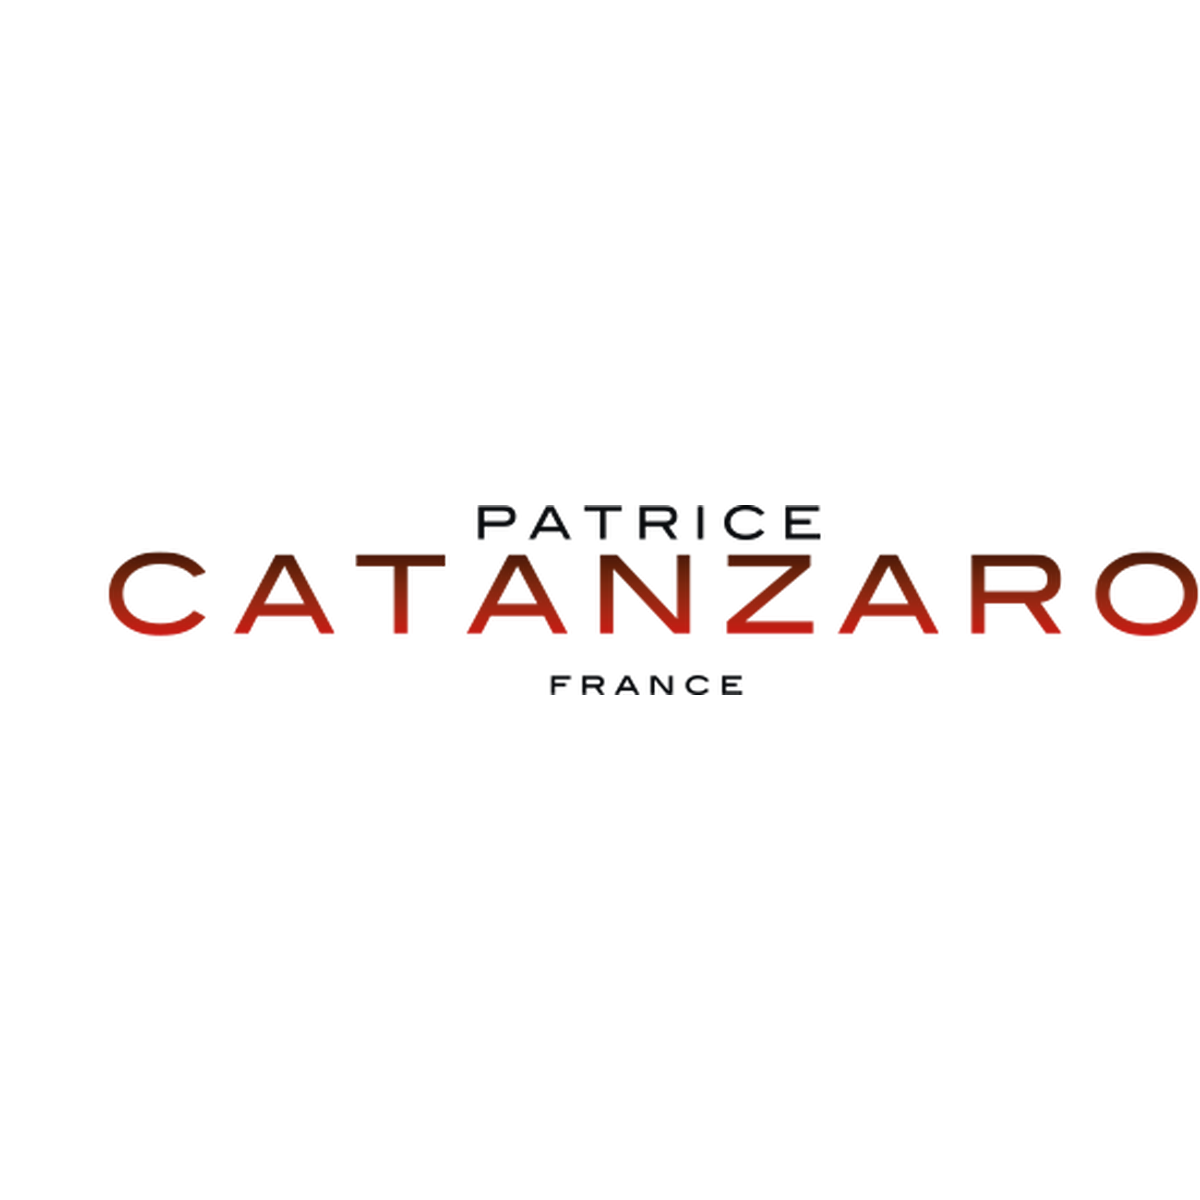 キャットスーツ パトリス カタンザロ ジャポン フェティッシュファッション ボンテージ Sm